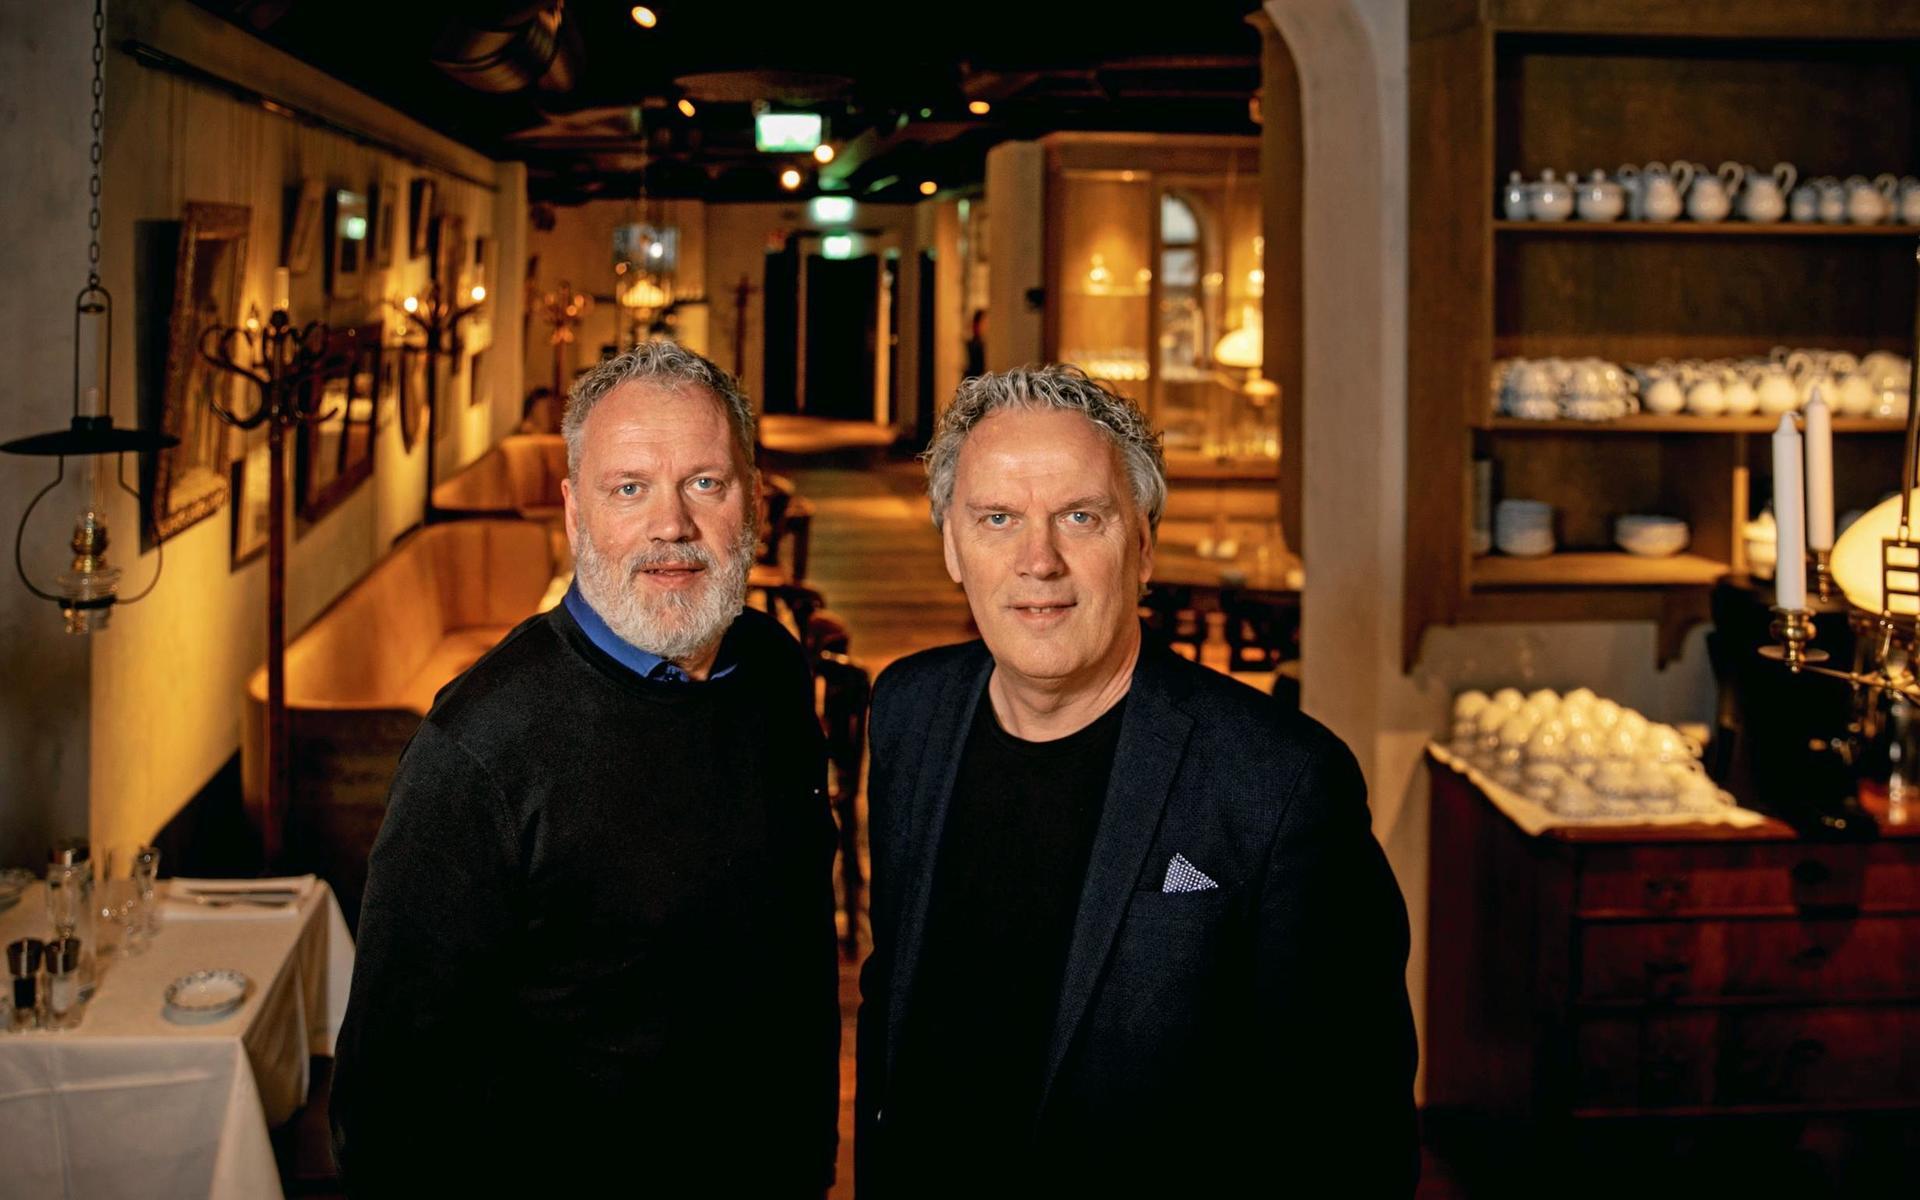 Tvillingarna Bosse och Janne Andersson var 1987 med och grundade Produktionsgruppen i Halland, som 1991 bytte namn till Nöjespatrullen och senare blev 2entertain, som nu ingår i den stora koncernen Moment Group.